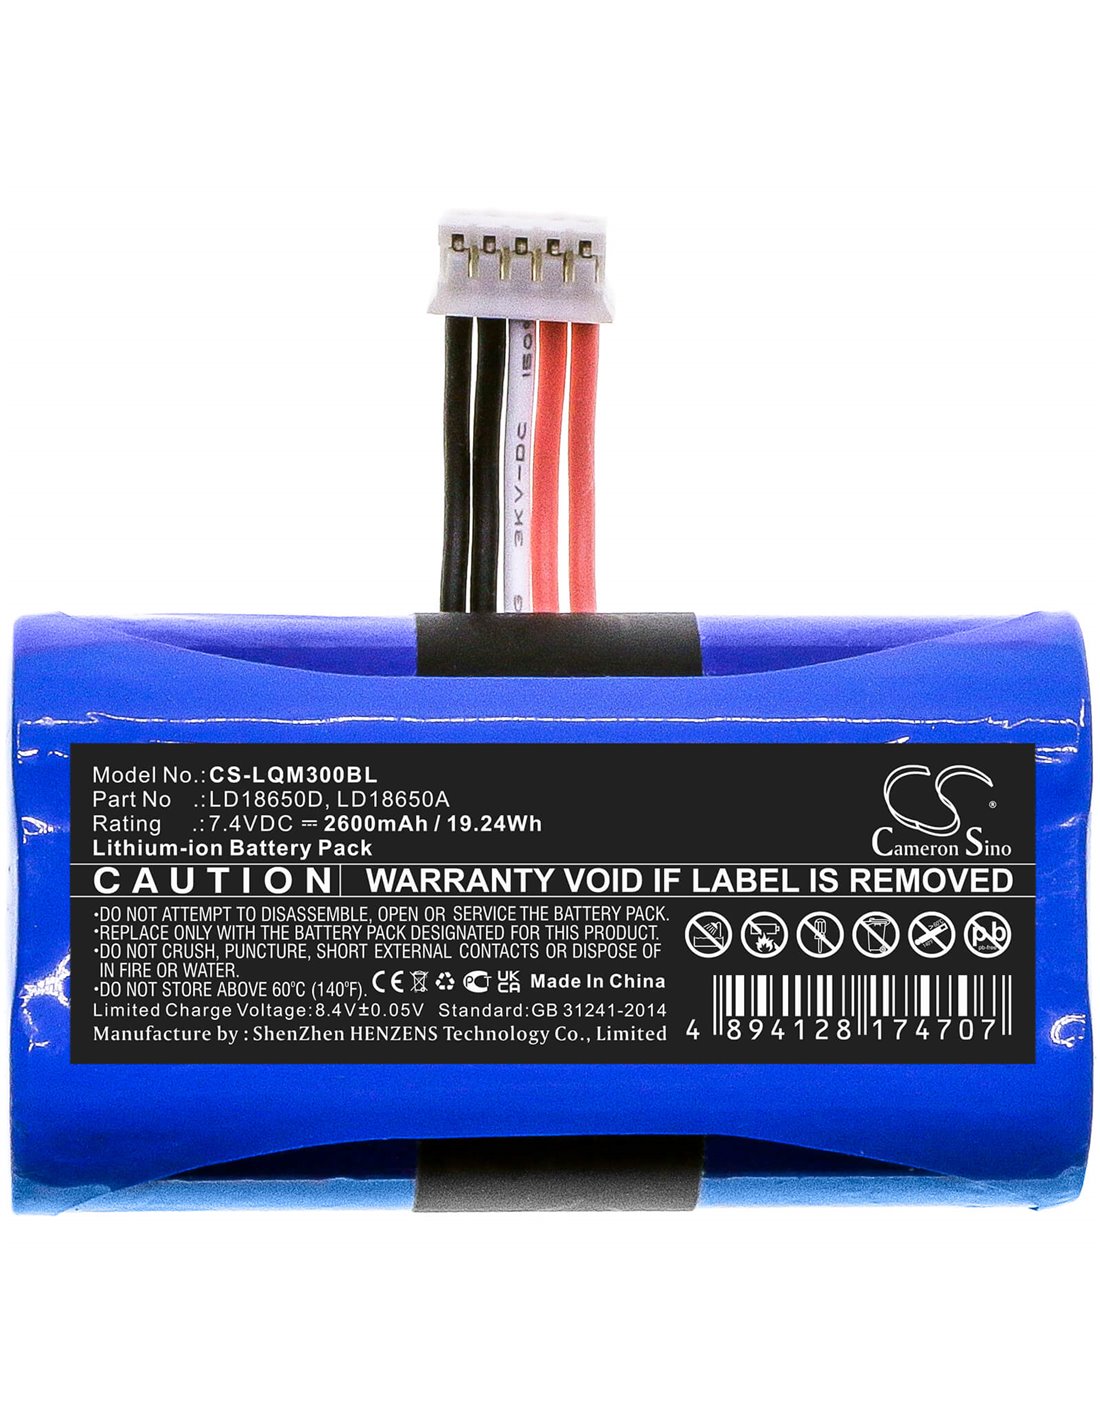 7.4V, 2600mAh, Li-ion Battery fits Newland, N510, N900, N910, 19.24Wh